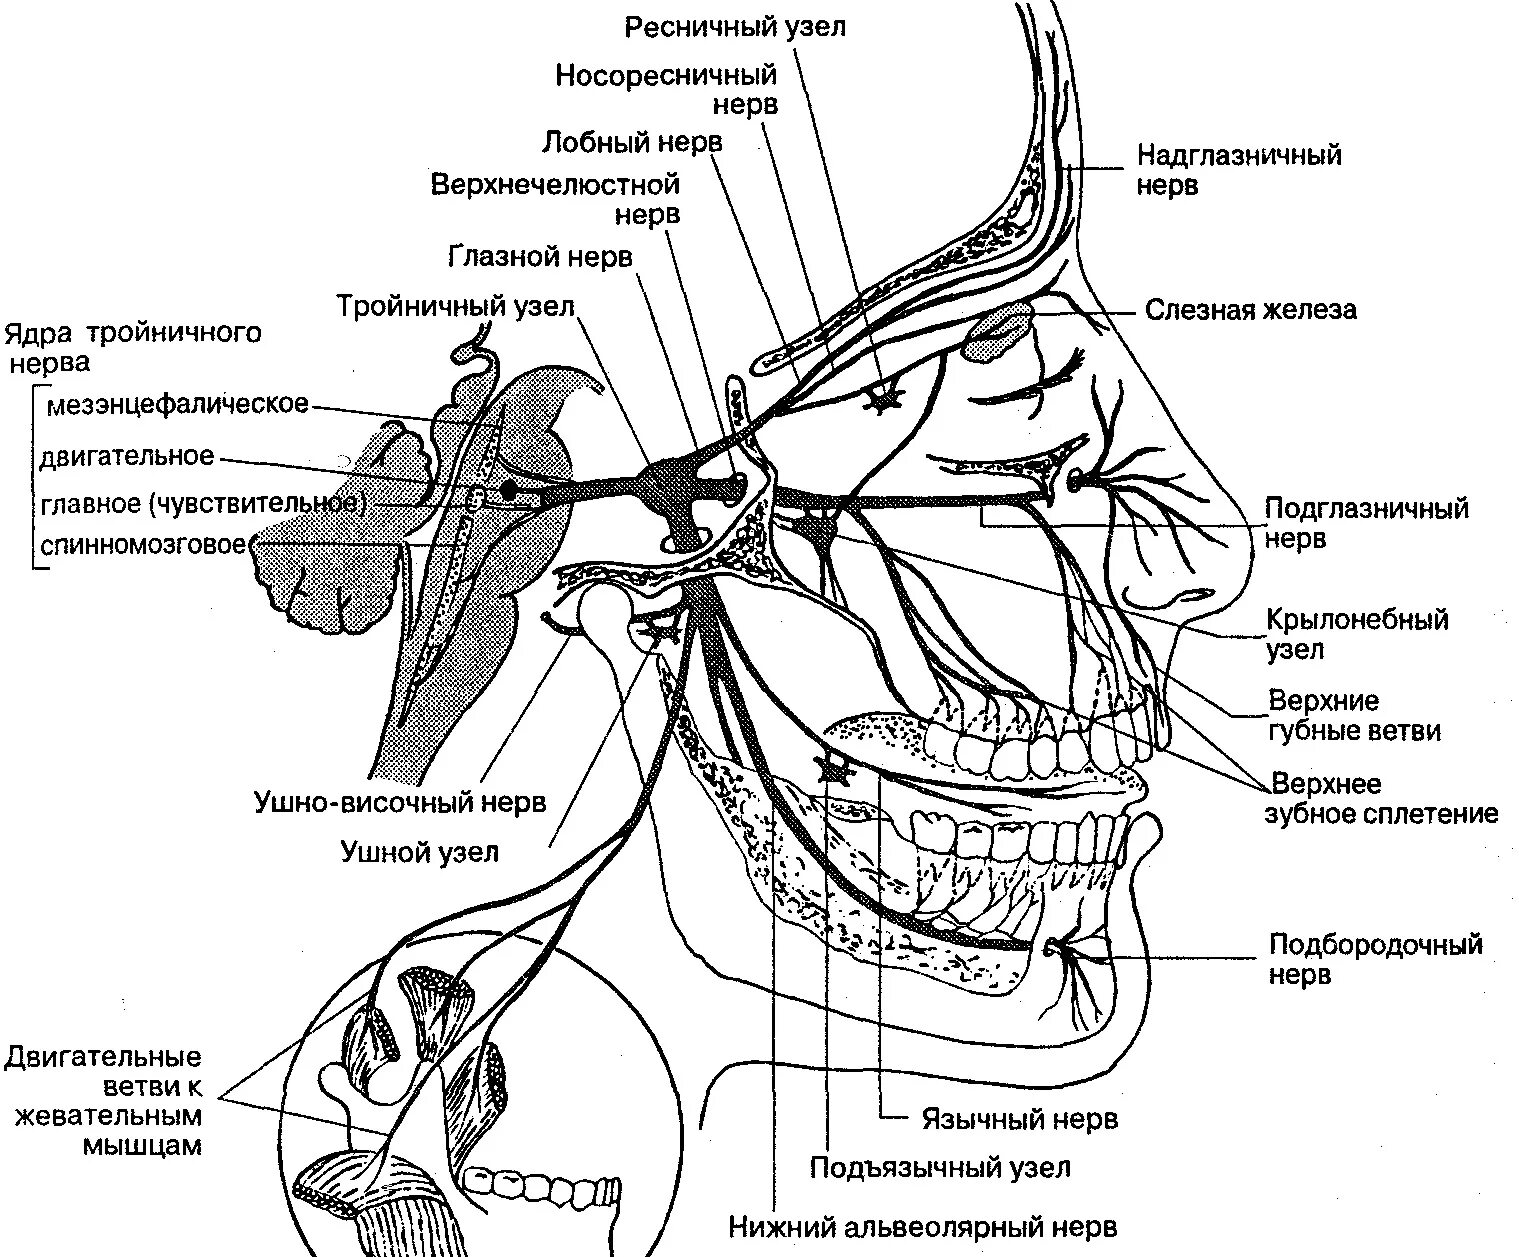 Тройничный нерв справа. Ветви тройничного нерва анатомия. Схема проекции ветвей тройничного нерва. Иннервация тройничного нерва схема. Узлы тройничного нерва анатомия.